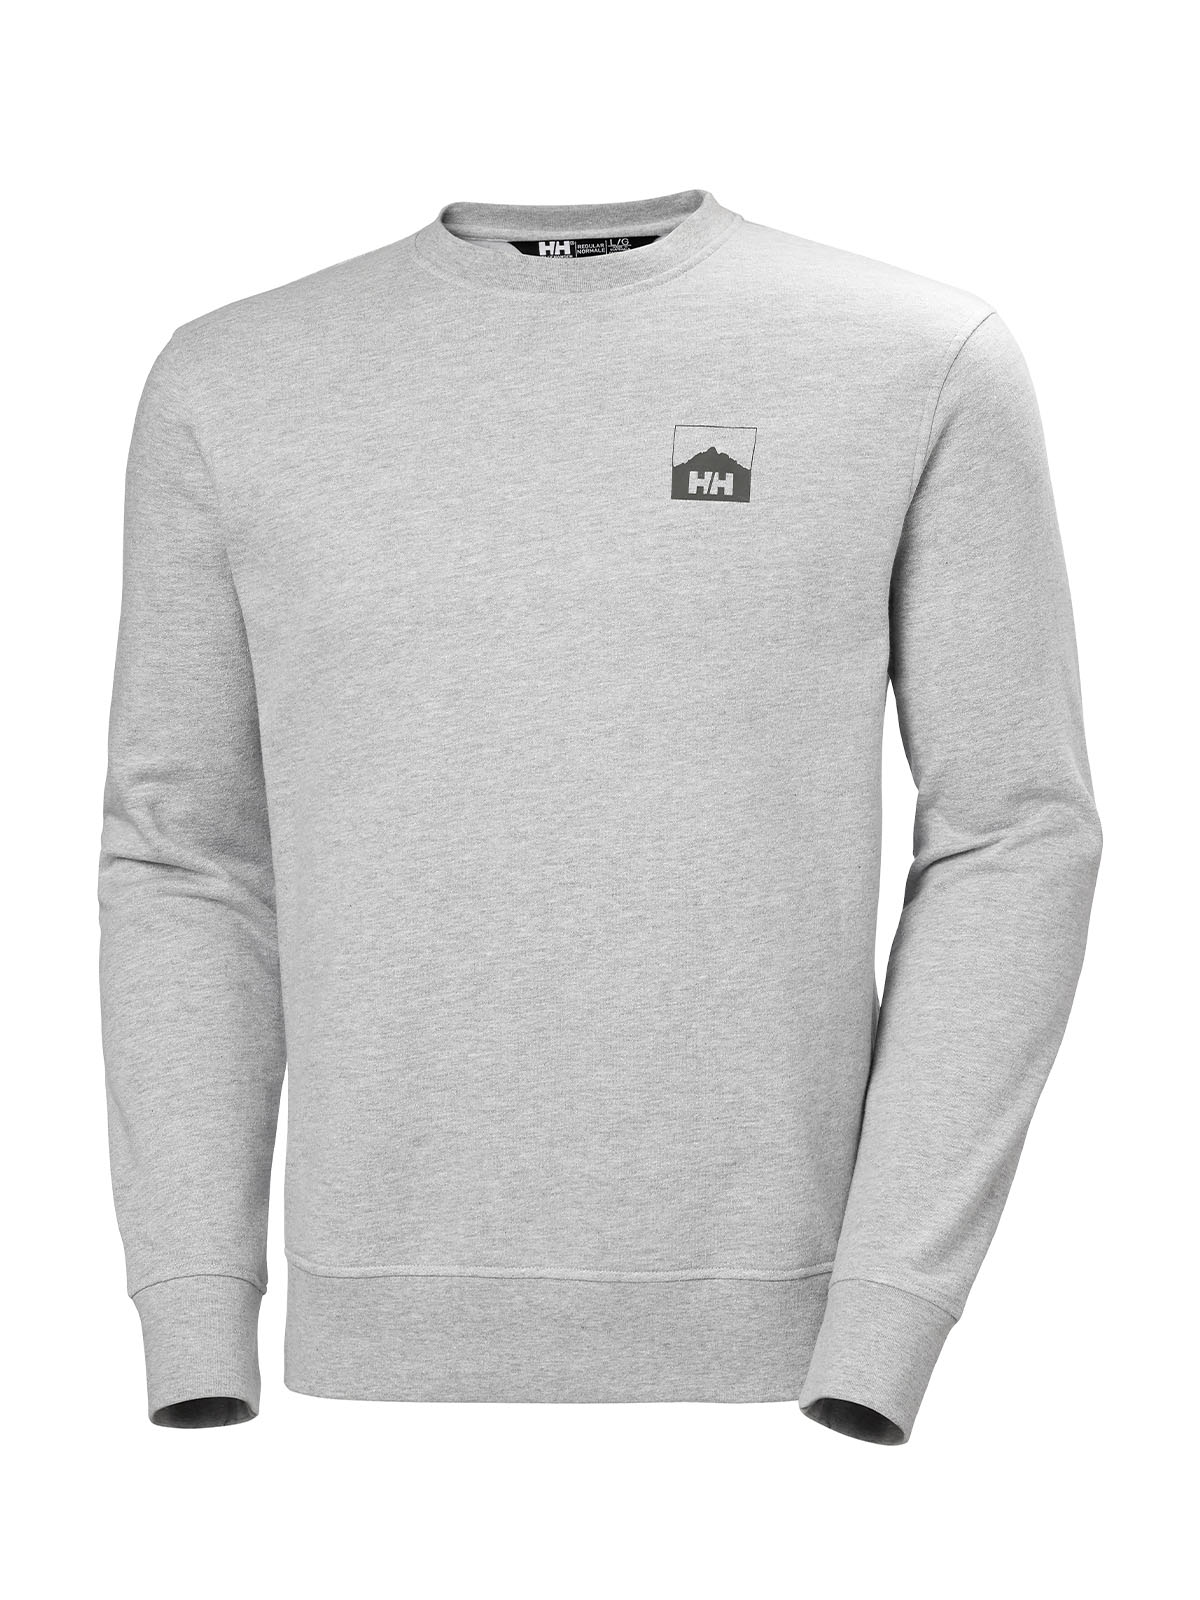 Nord Graphic Crew Sweatshirt for Men